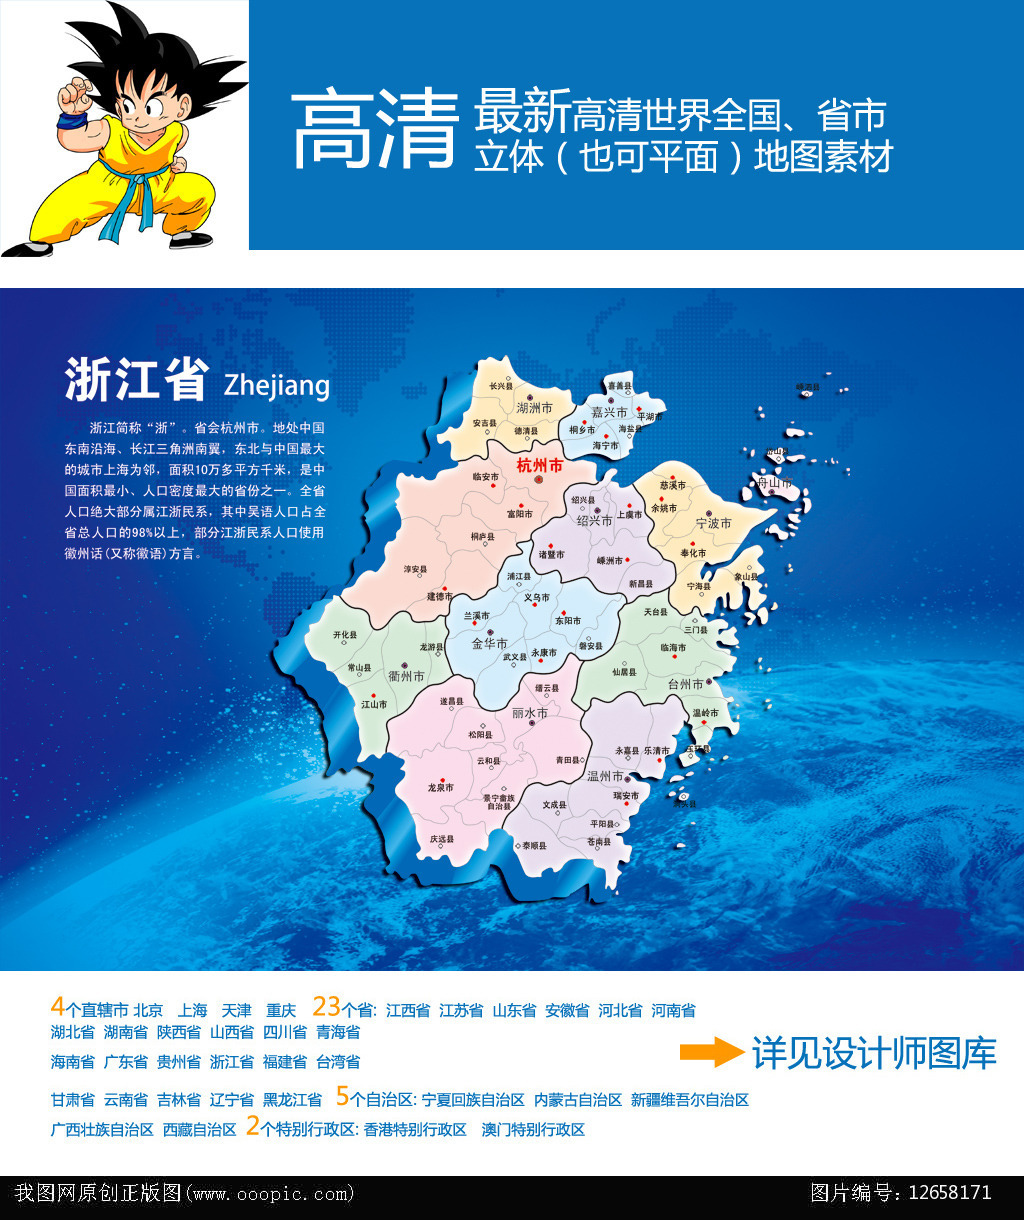 浙江省地图分享展示图片